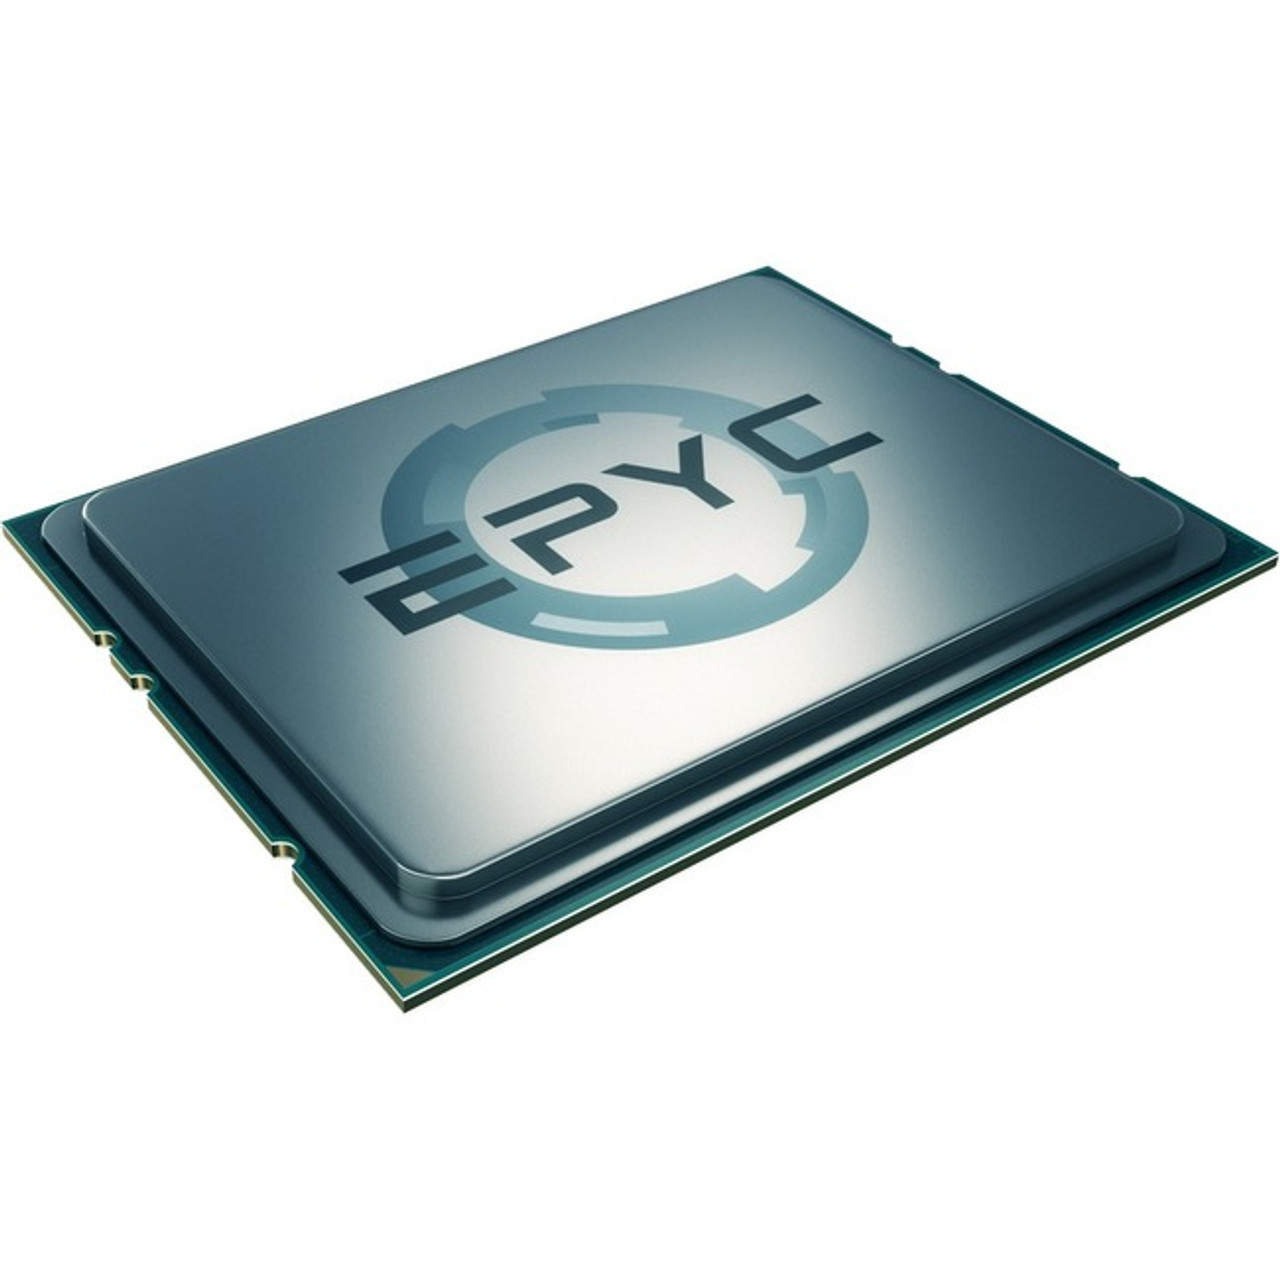 AMD PS7251BFV8SAF